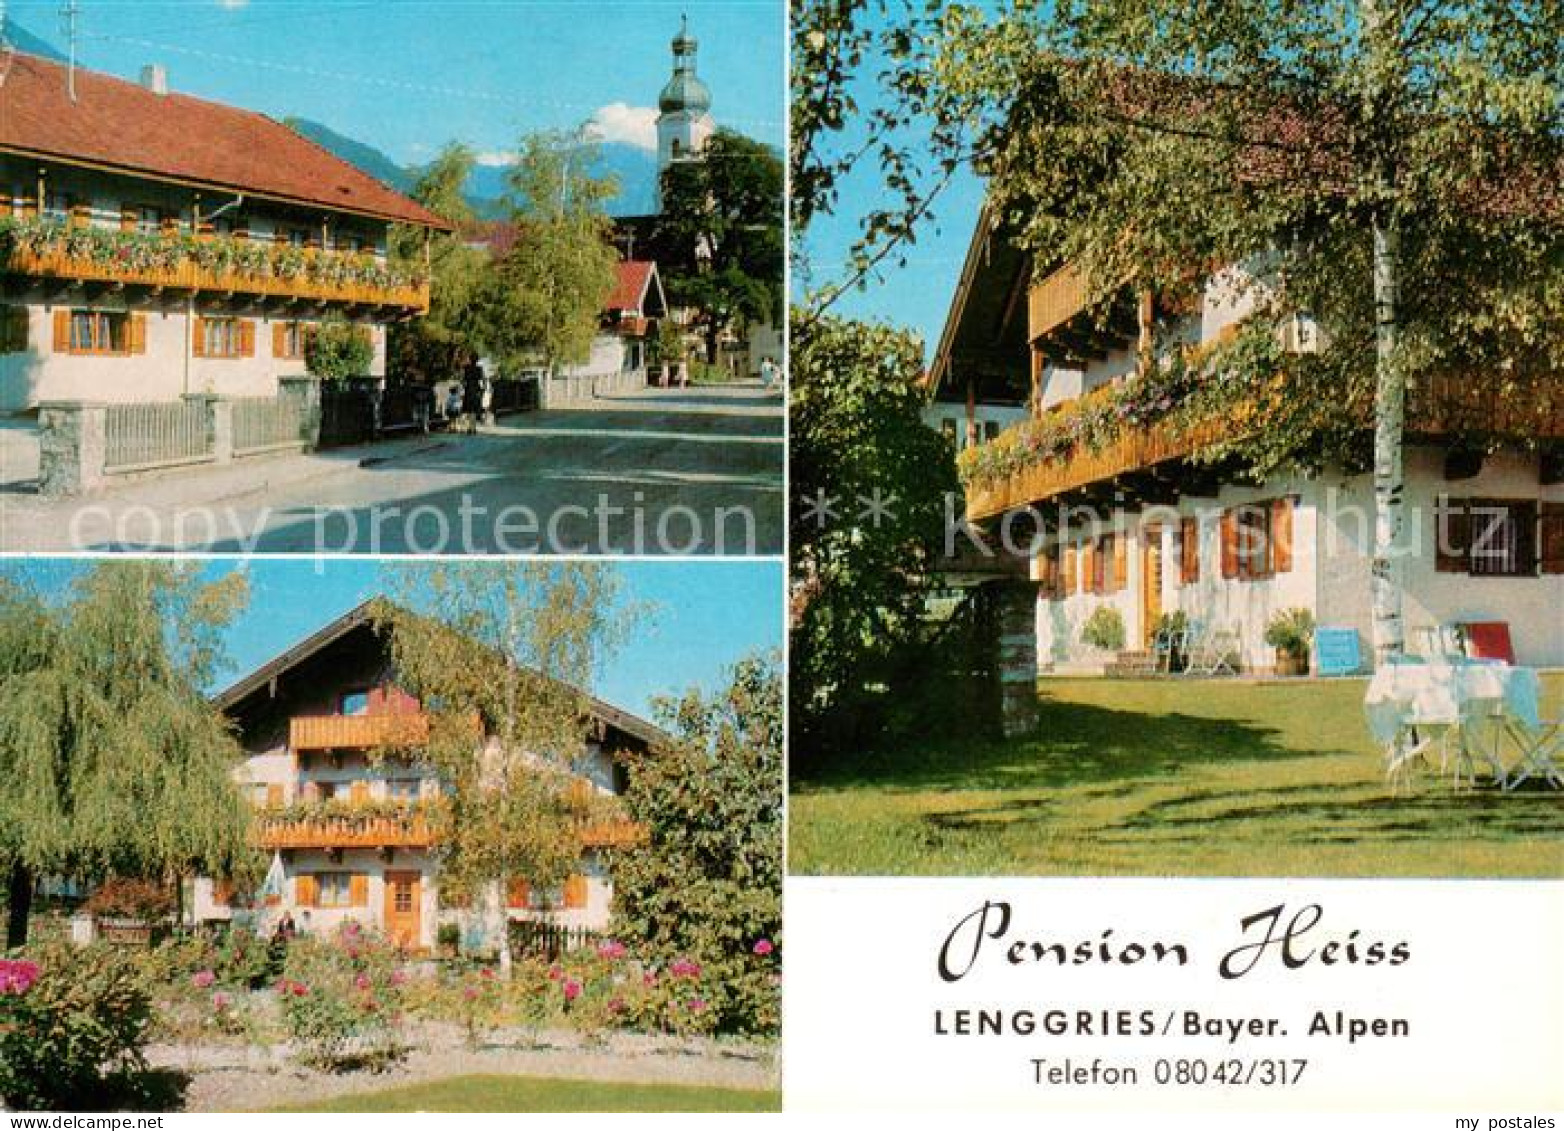 73651674 Lenggries Gaestehaus Pension Heiss Ortsmotiv Mit Kirche Bayerische Alpe - Lenggries